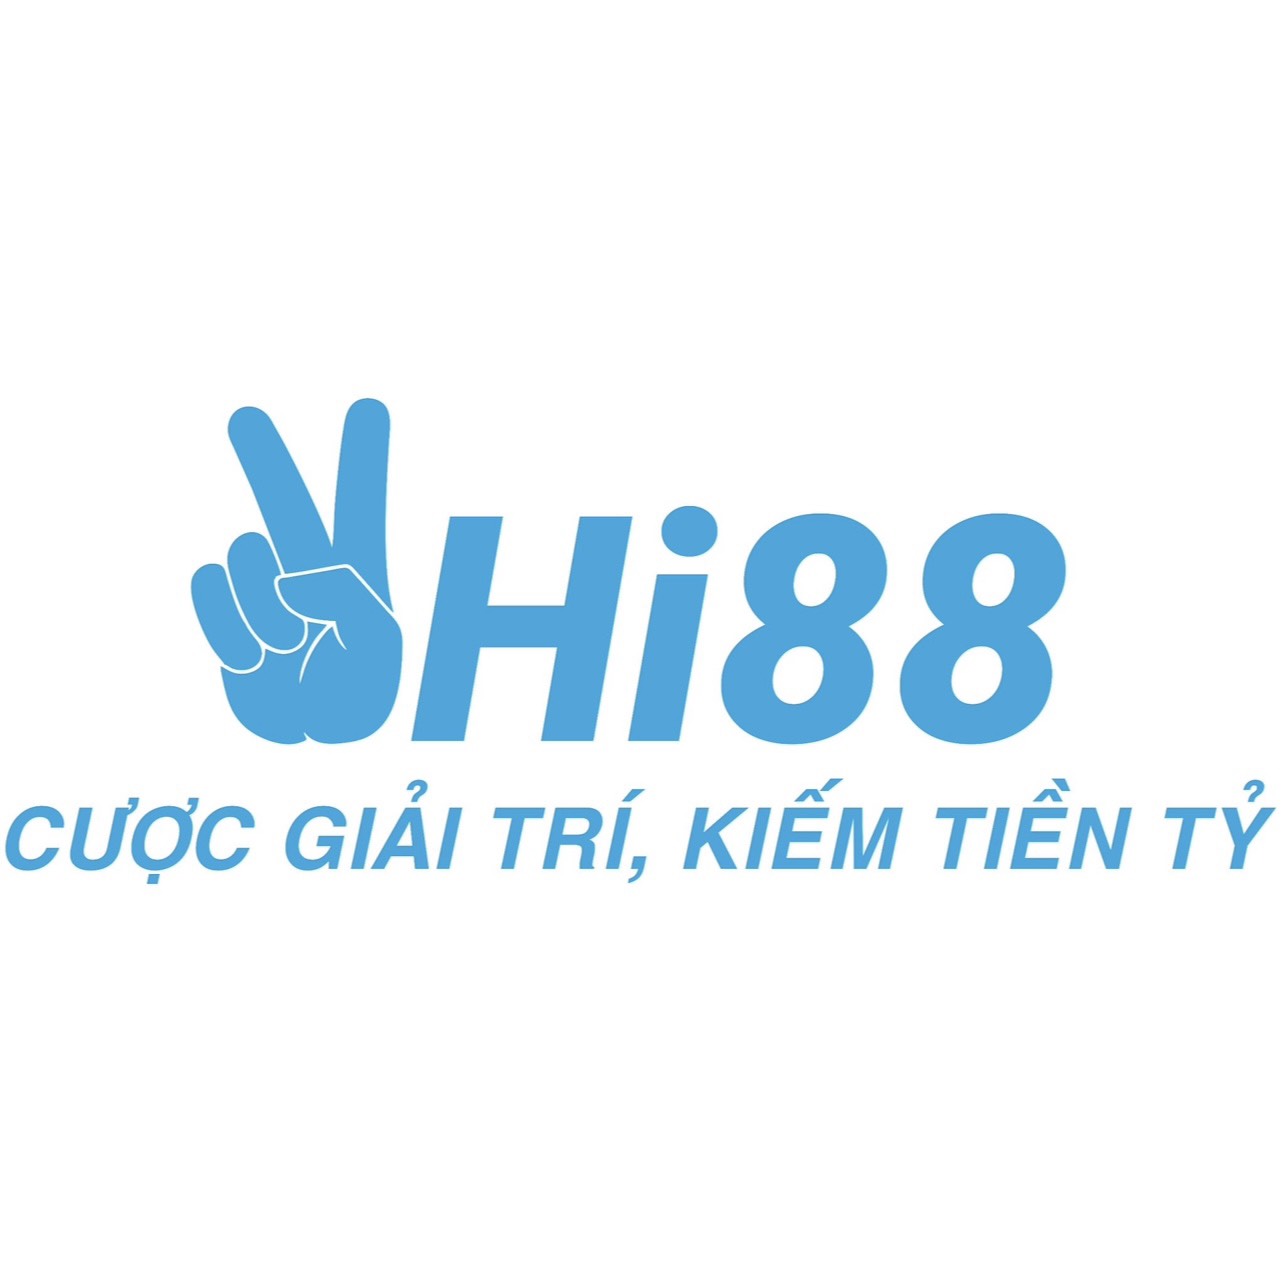 hi88orgg